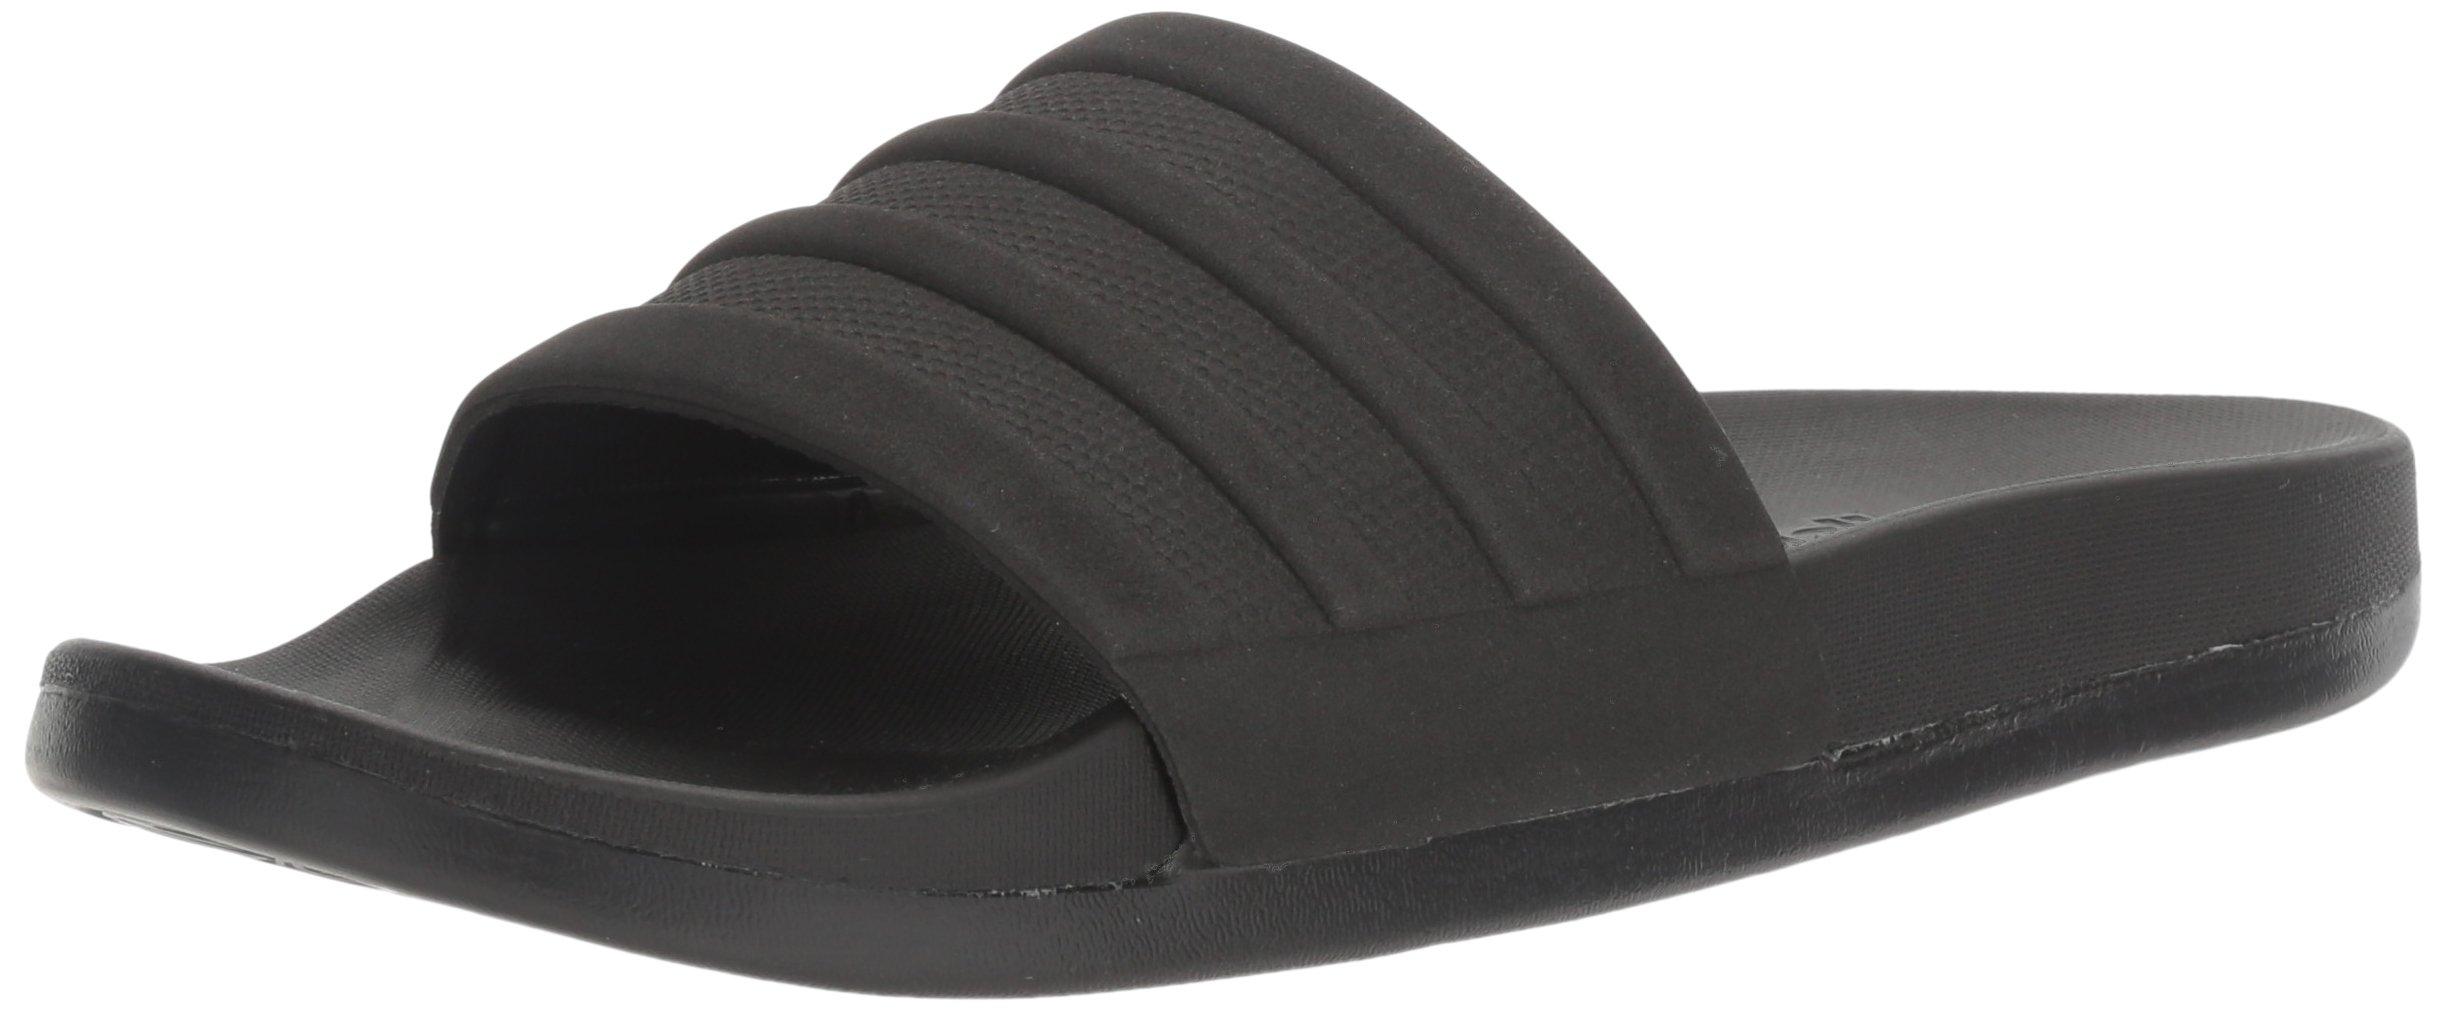 adidas Synthetic Adilette Comfort Slide Sandals in Black/Black/Black (Black)  for Men - Save 60% | Lyst